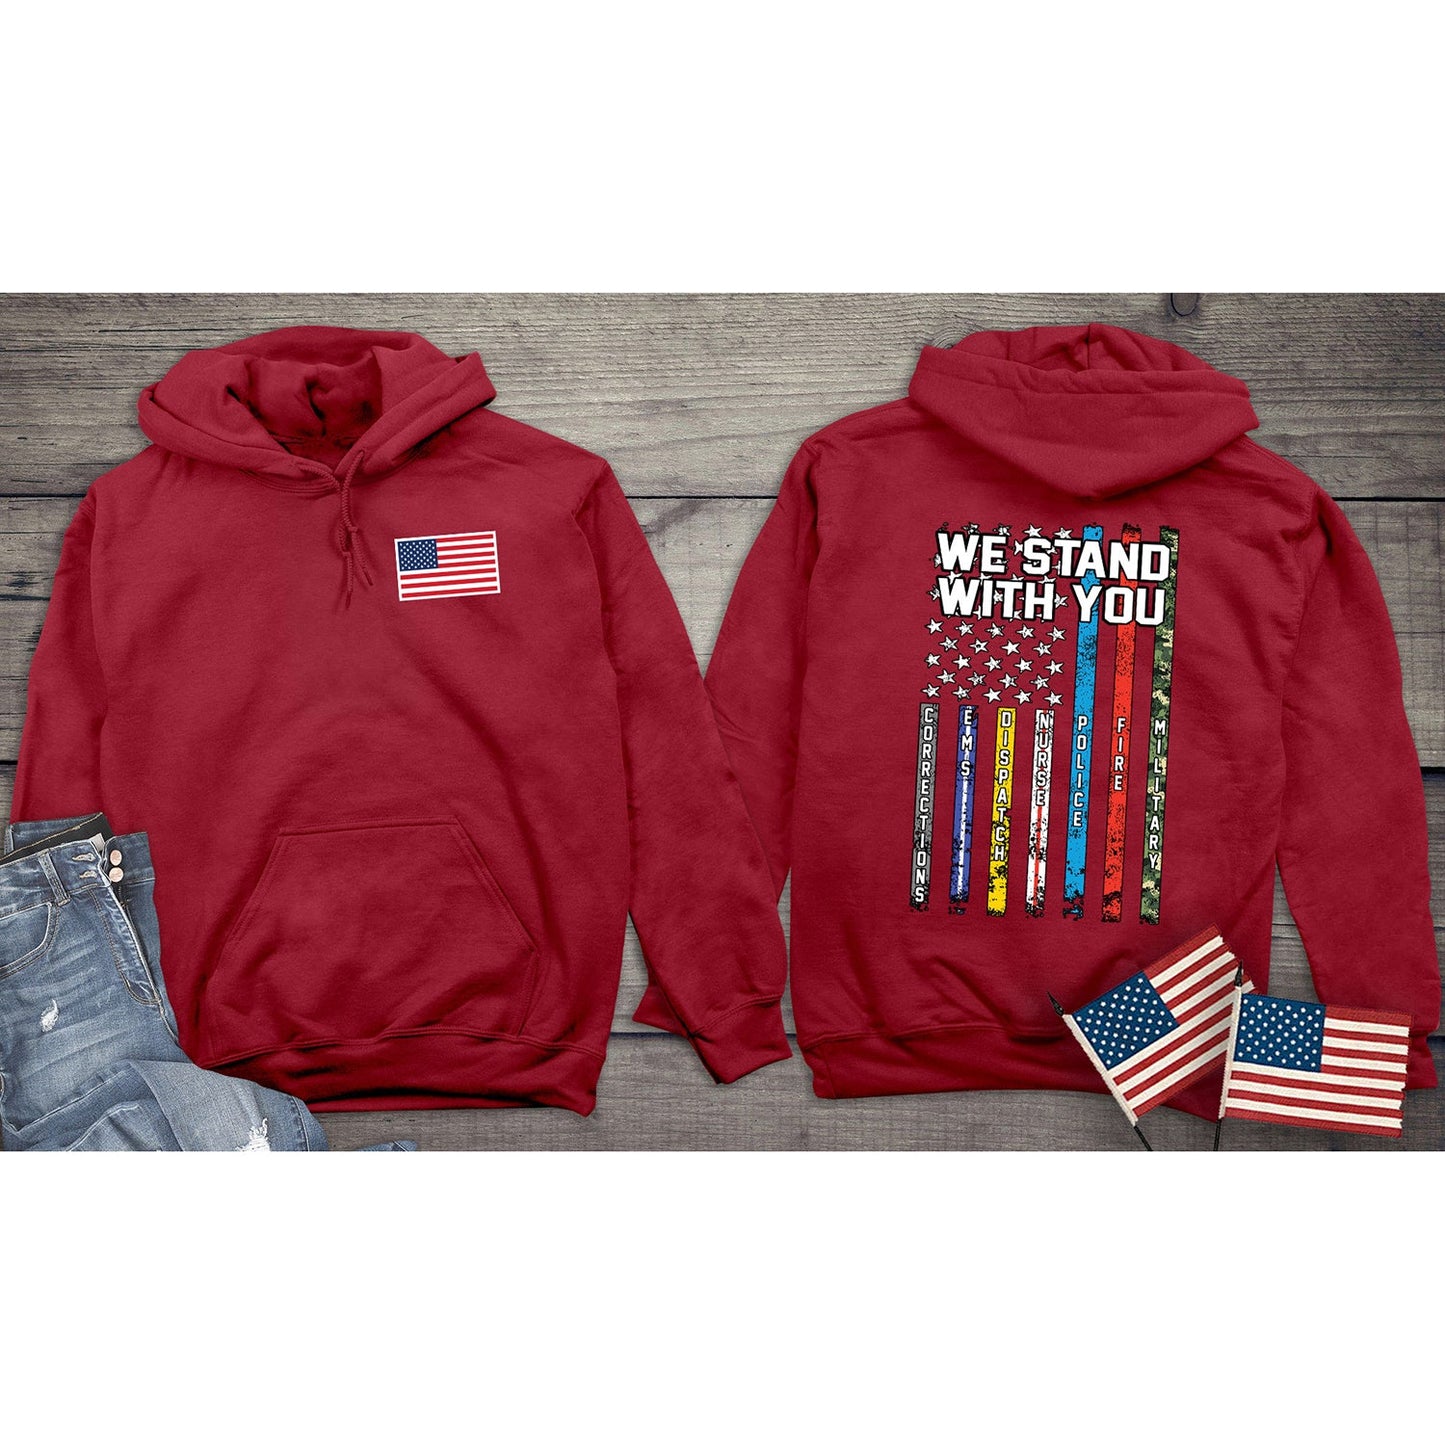 We Stand With You Hoodie, American Pride Hooded Sweatshirt